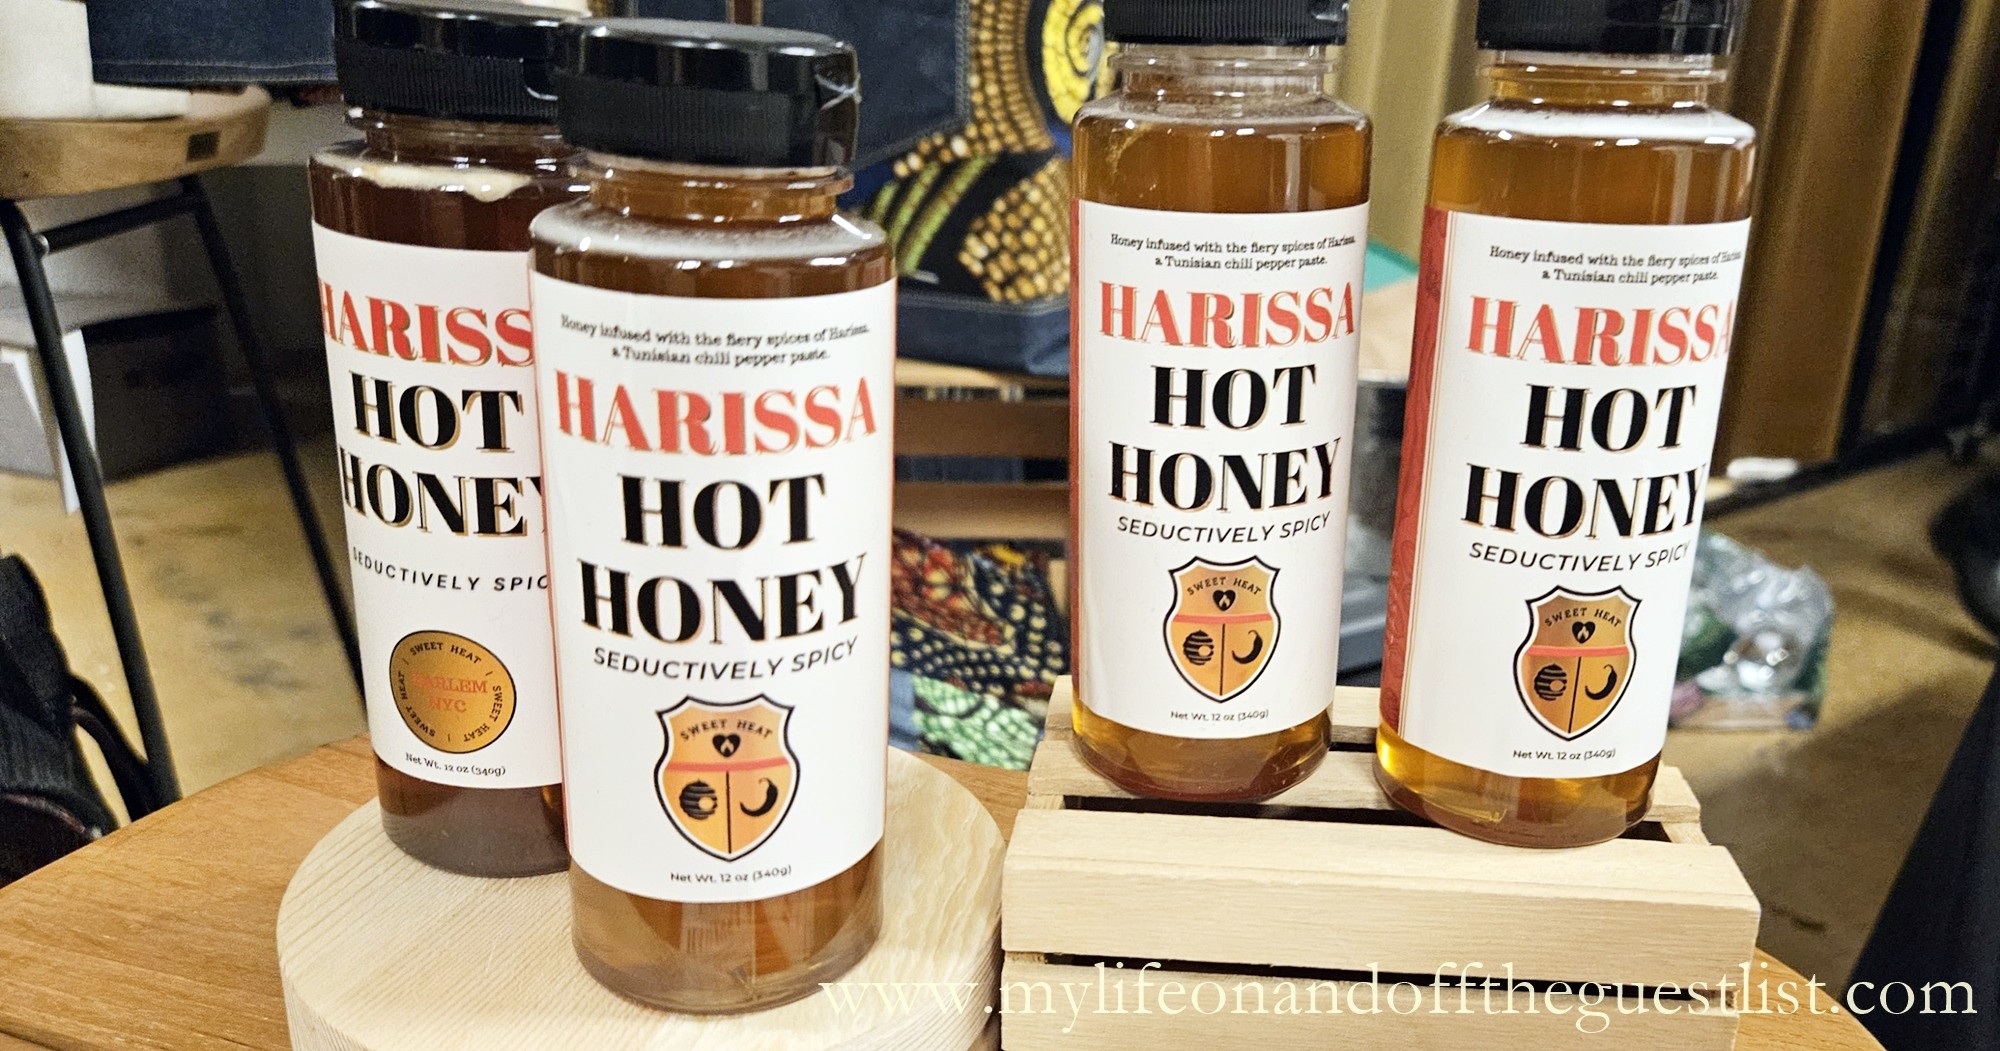 Holiday Happy Hour with Harissa Hot Honey